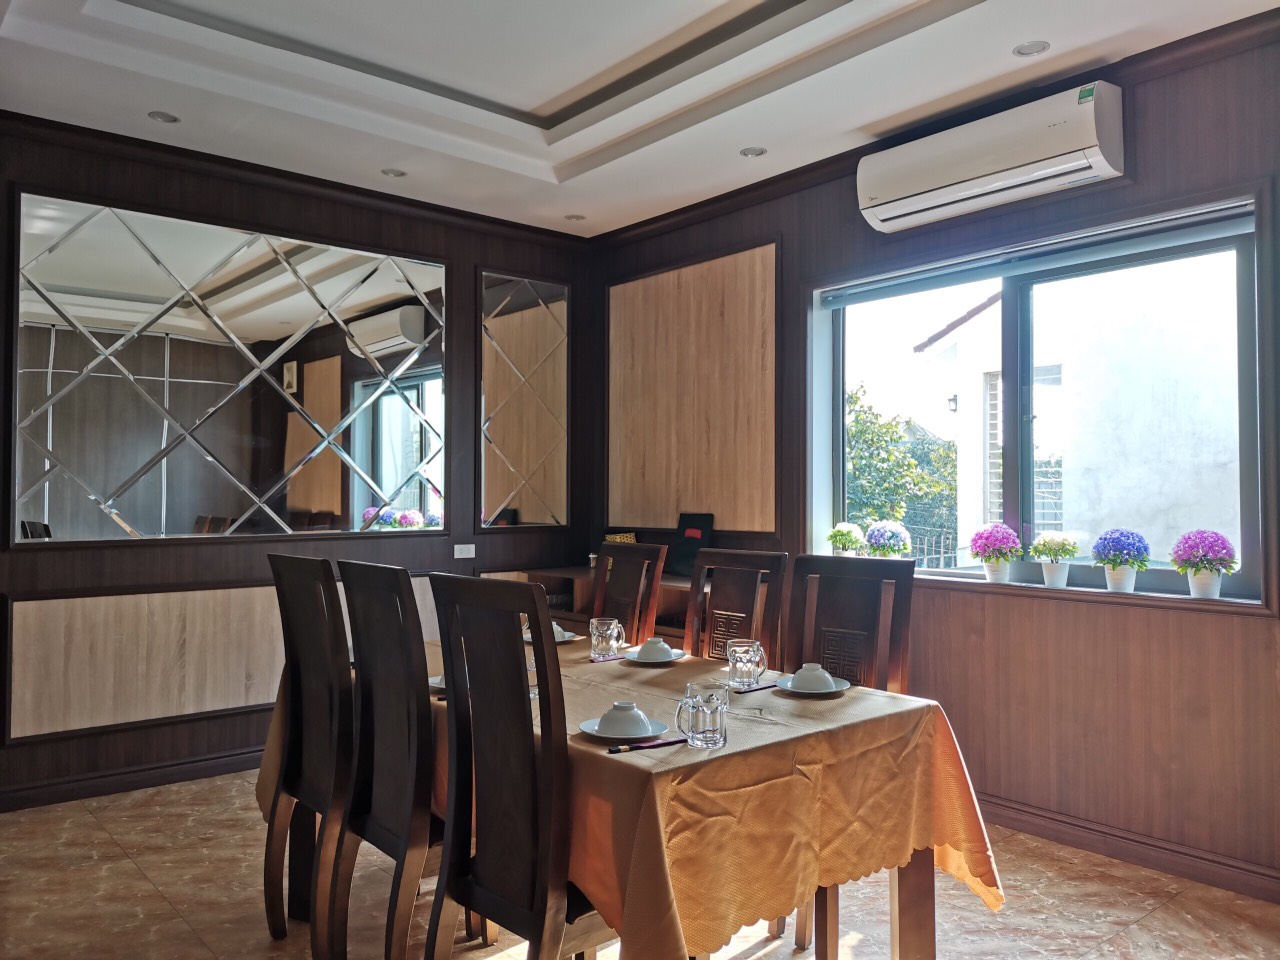 Tam op AnPro 1 - Thiết kế nội thất nhà hàng hiện đại với vân gỗ đẹp mắt